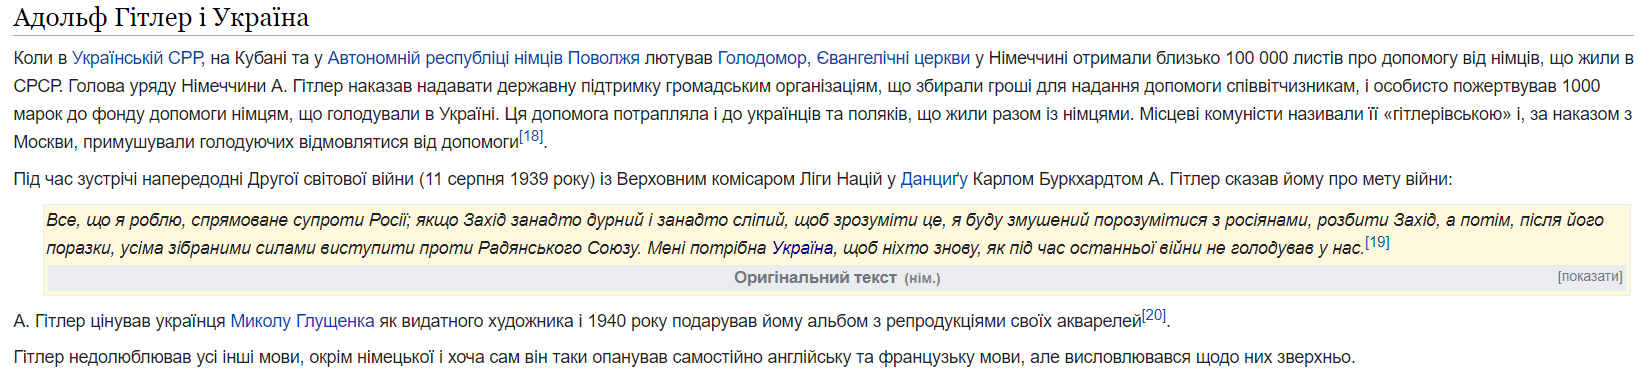 Гитлер и Украина - скриншот из Википедии